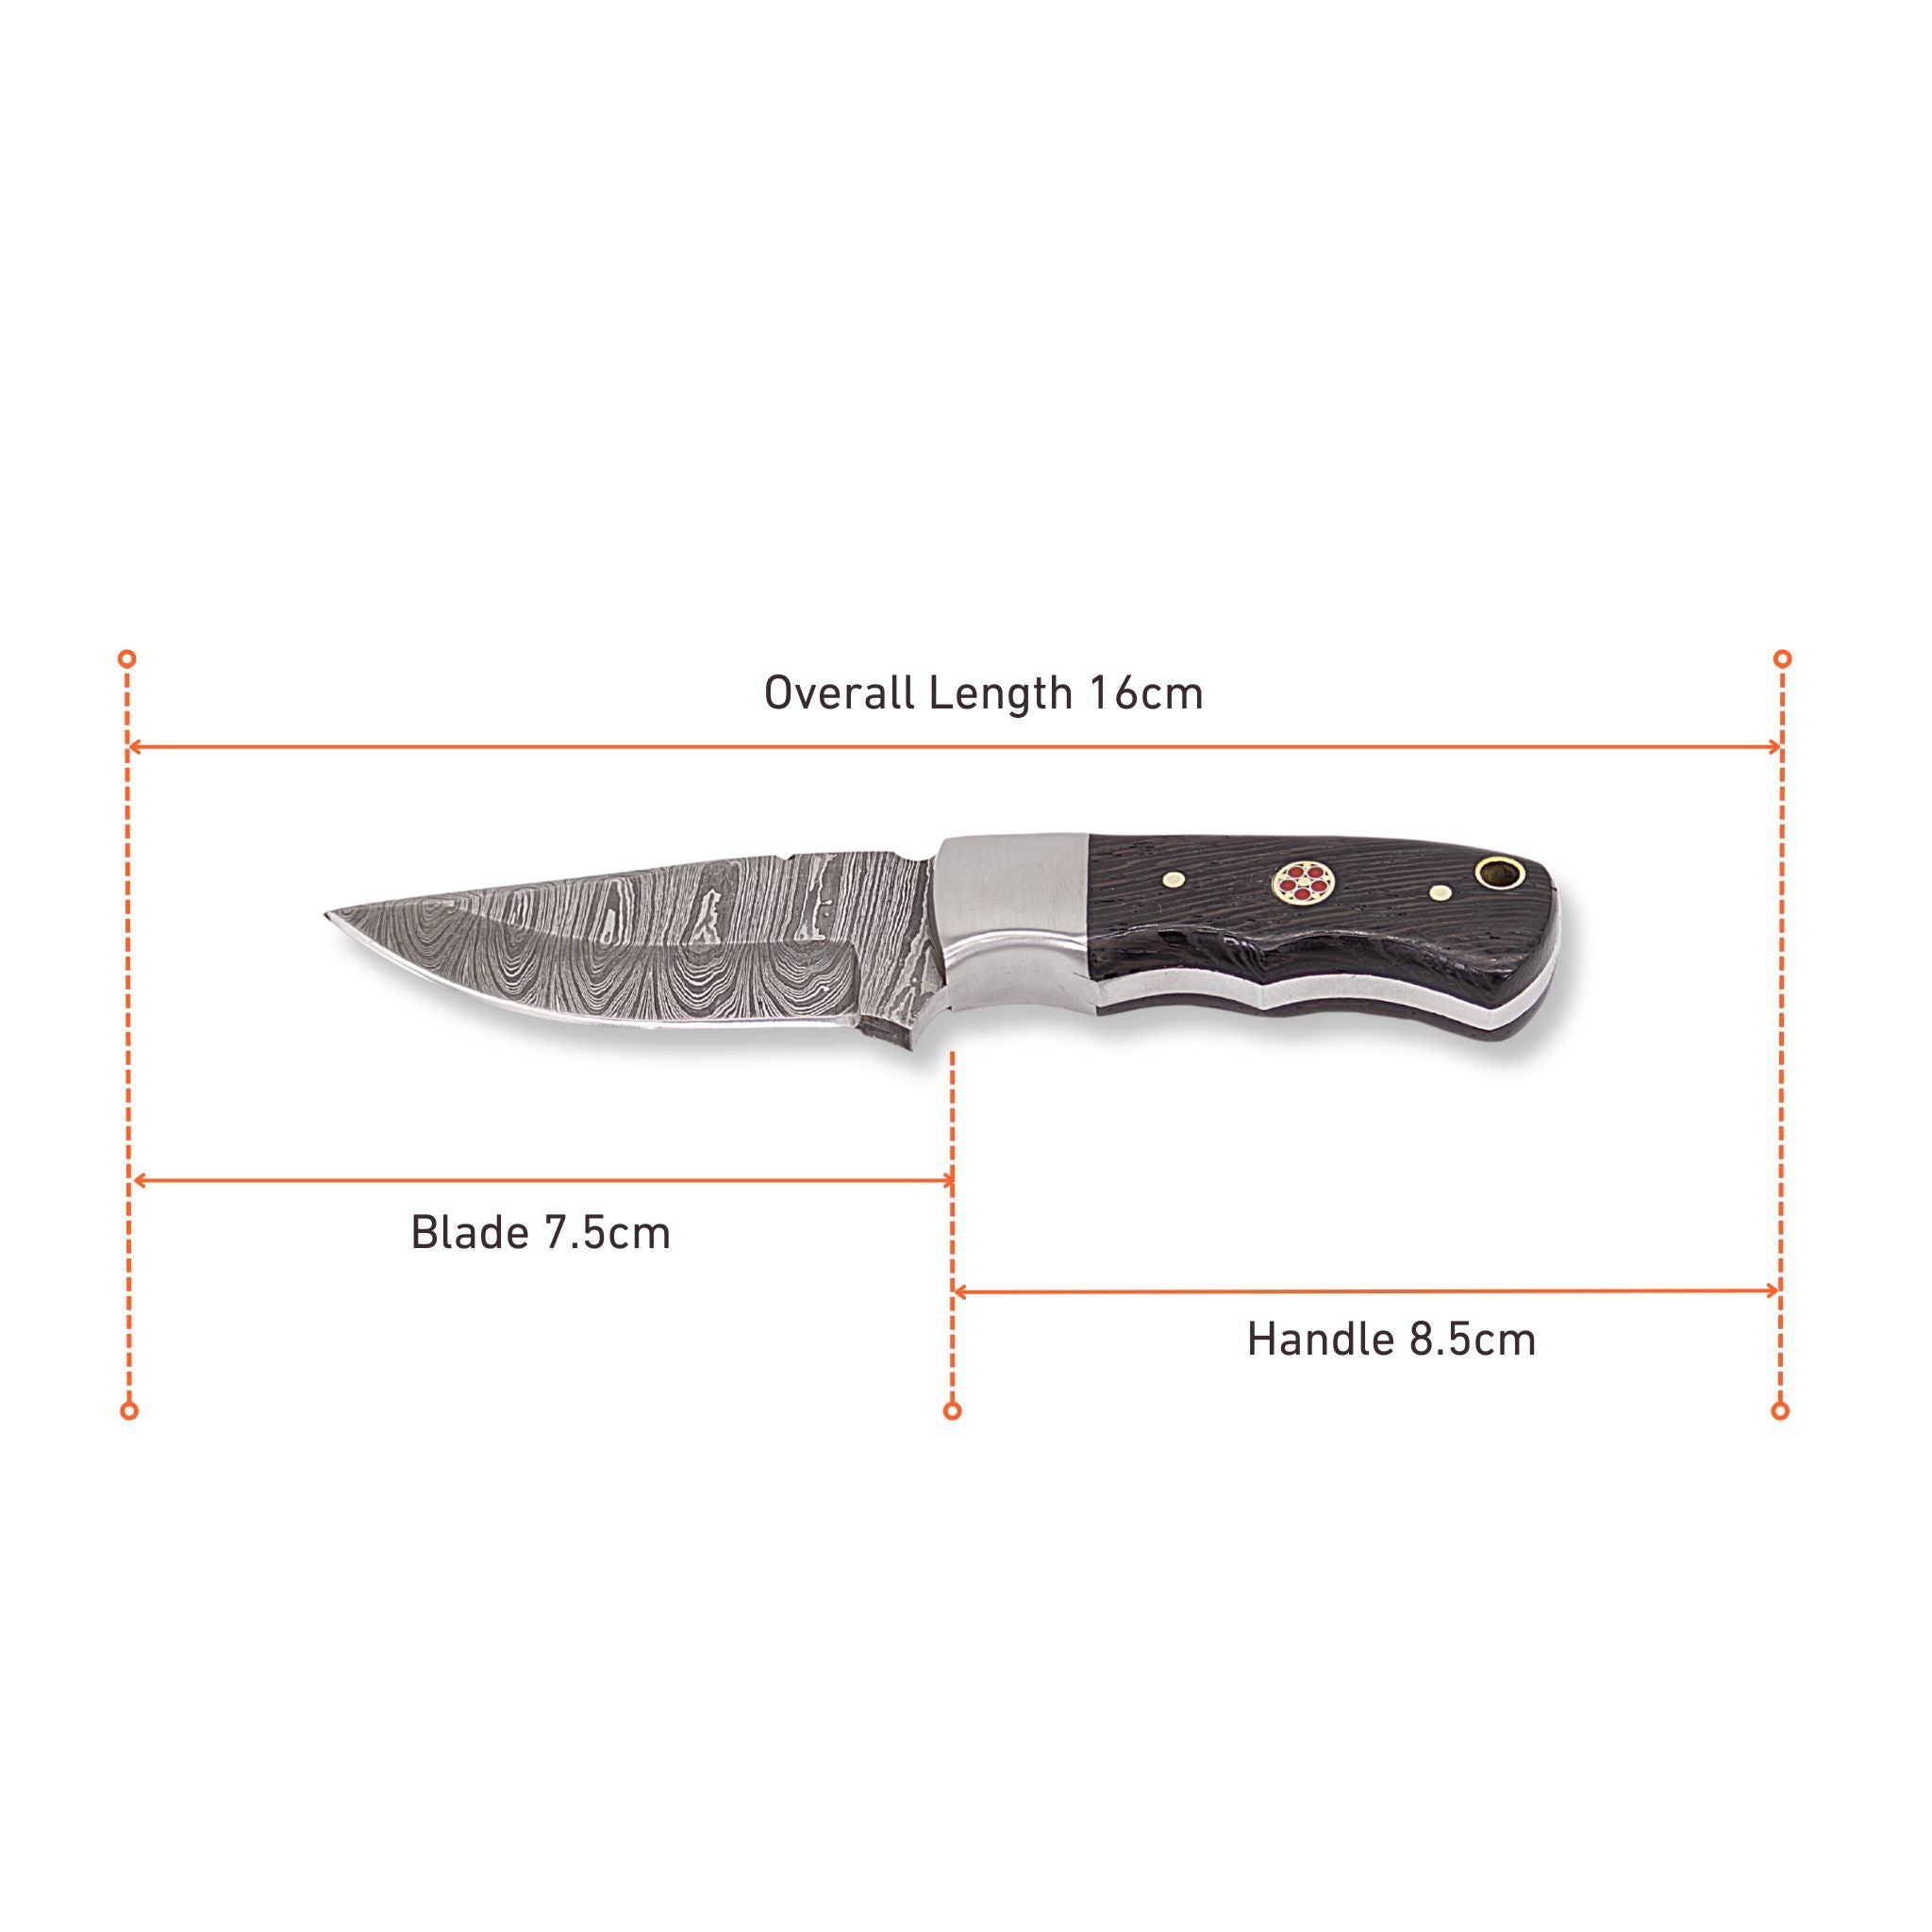 Brio Brisk II Handmade Skinner Knife Damascus Steel Blade Wenge Wood Handle